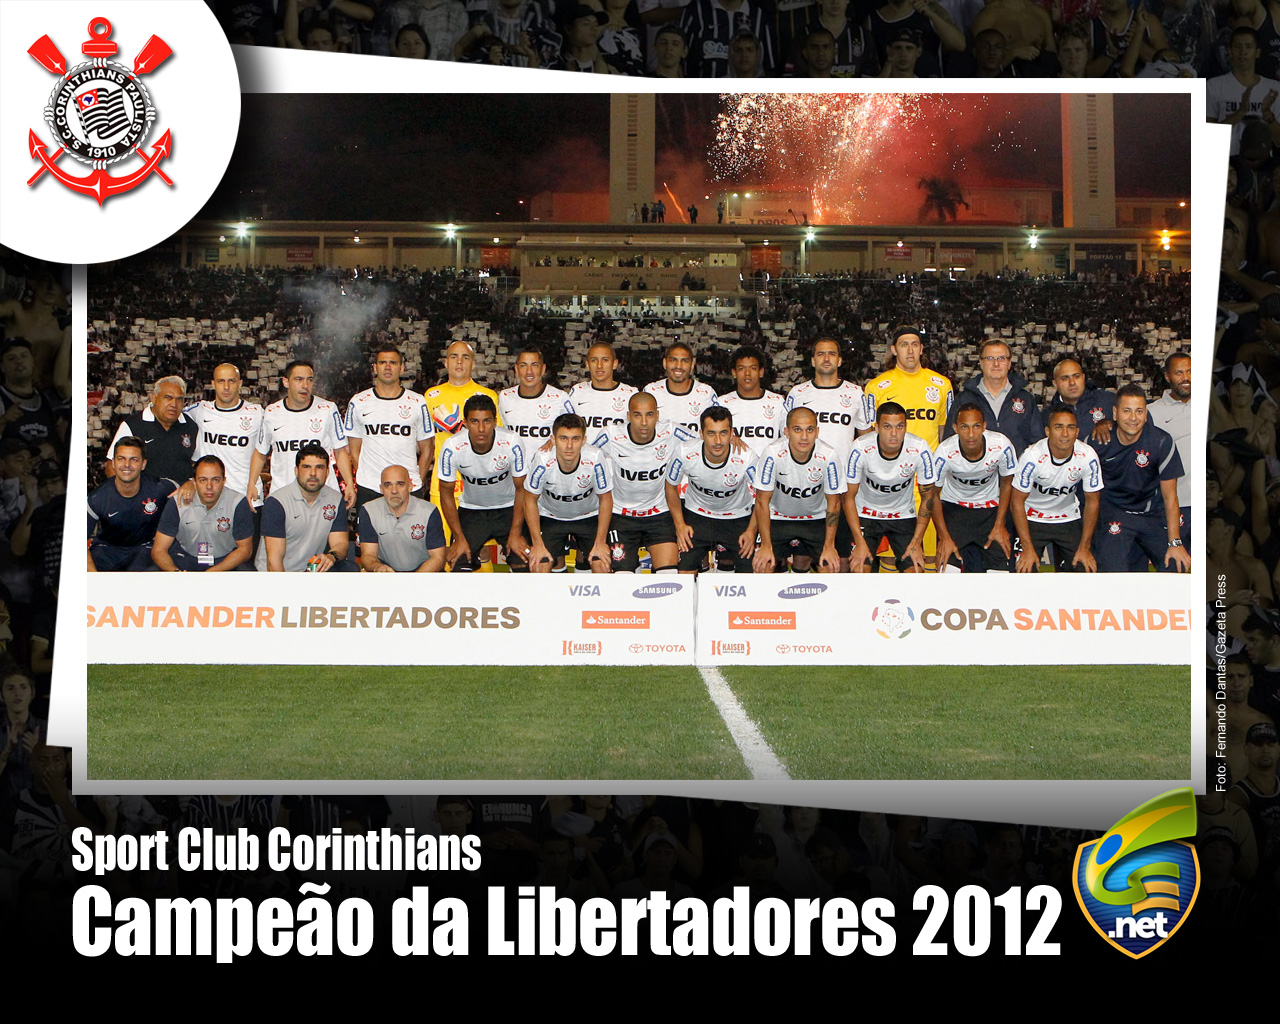 Wallpaper Corinthians Campeão da Libertadores 2012 - 08